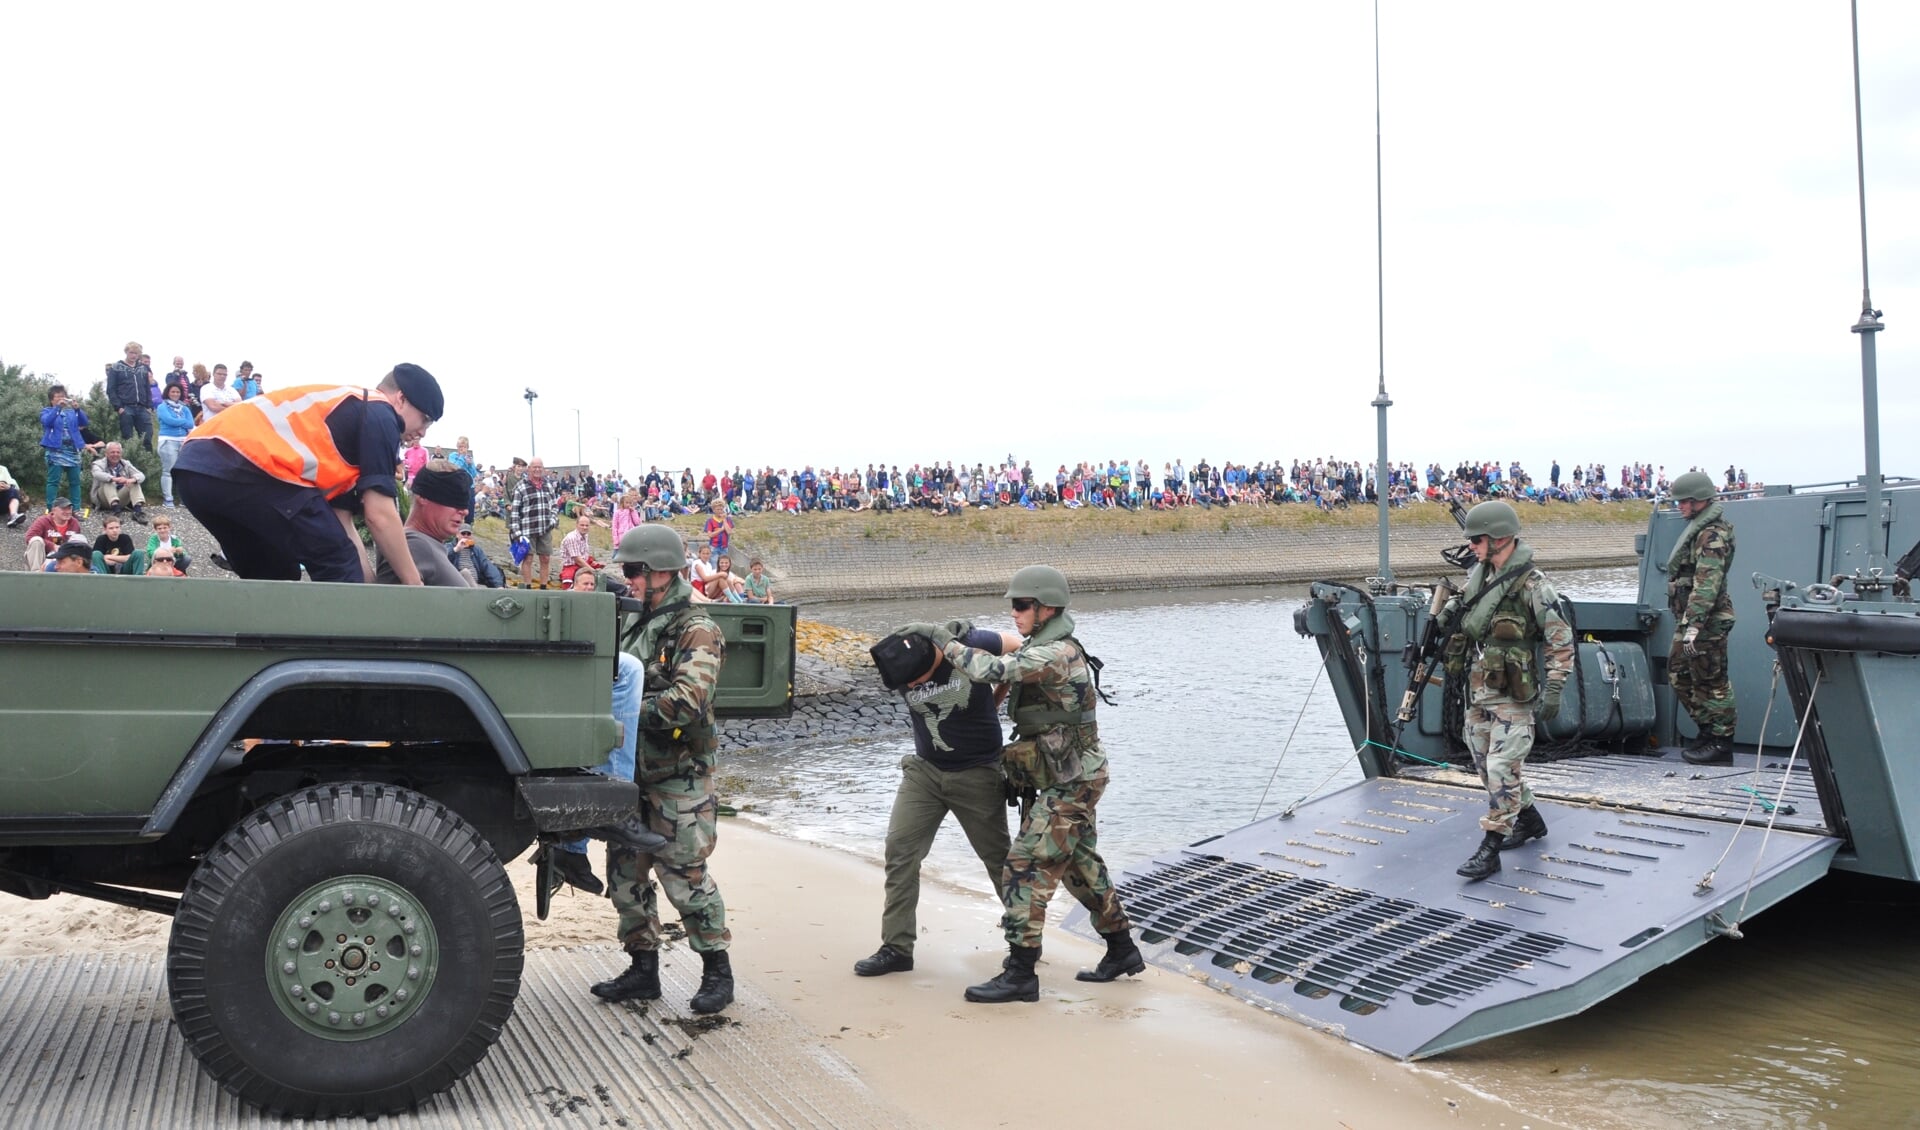 Mariniers in actie tussen een open dag die eerder op de Mok werd gehouden.